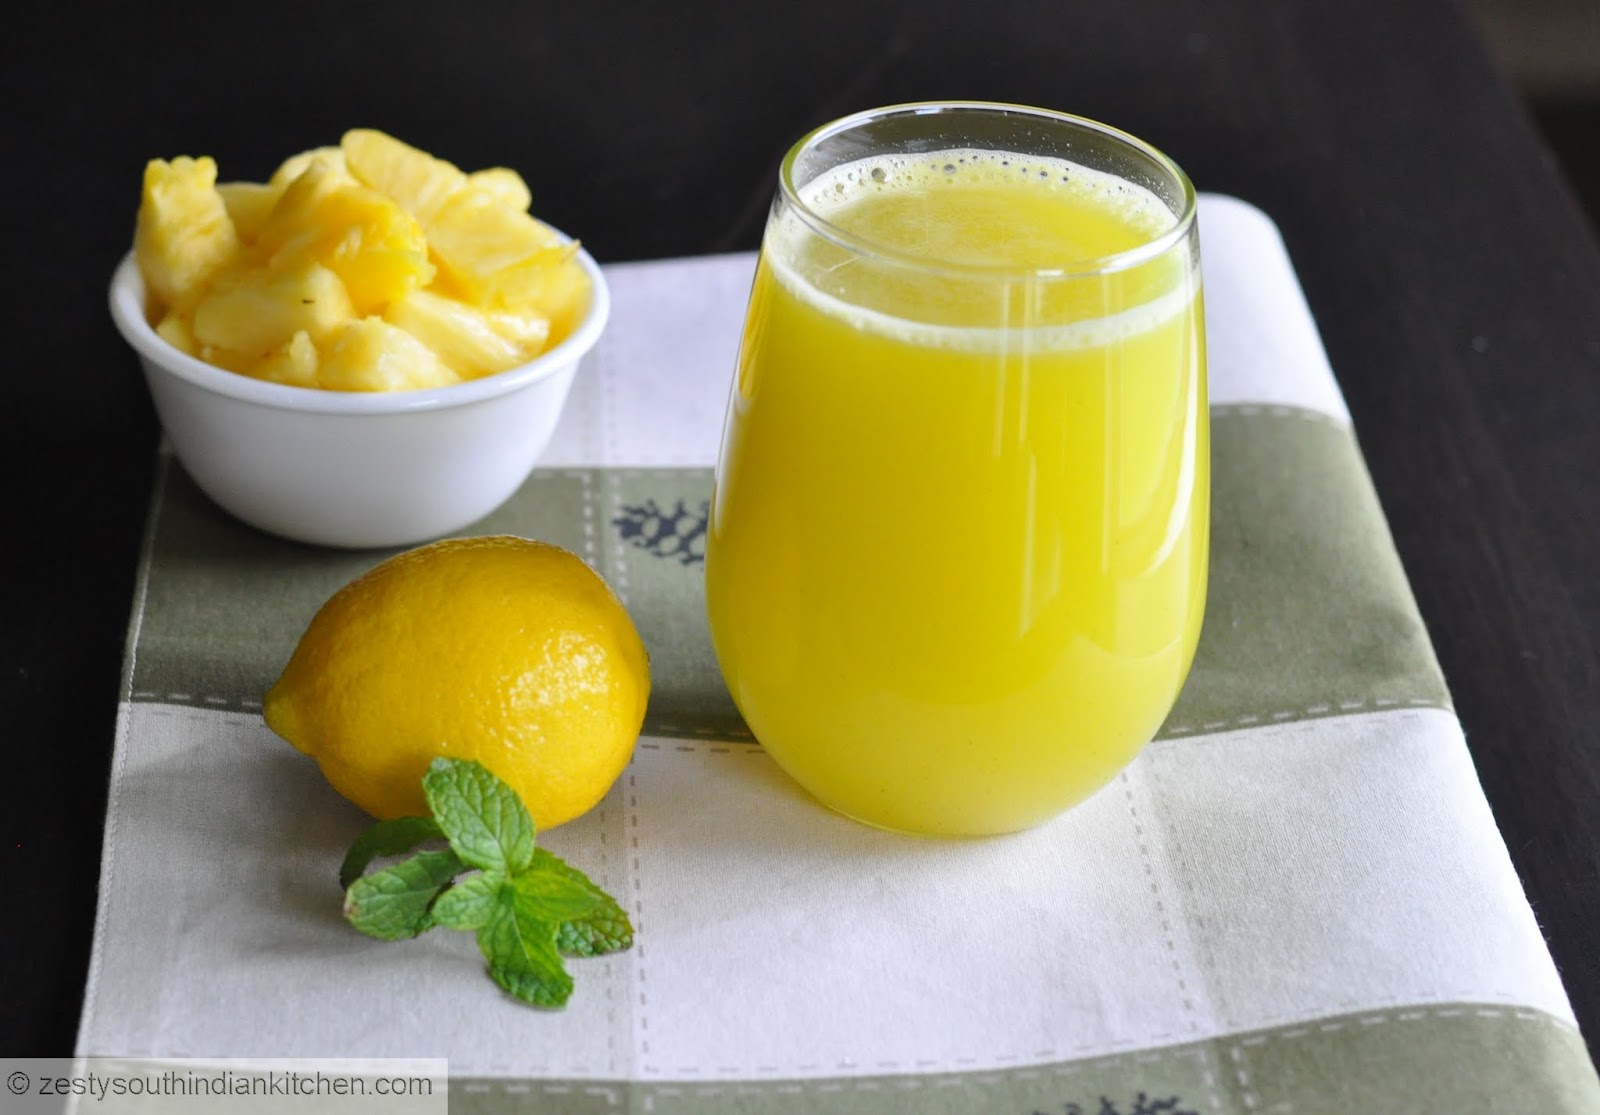 Сок лимона 1 2. Лимонный сок. Морс лимонный. Морс имбирно-лимонный. Лимон и лимонный сок.